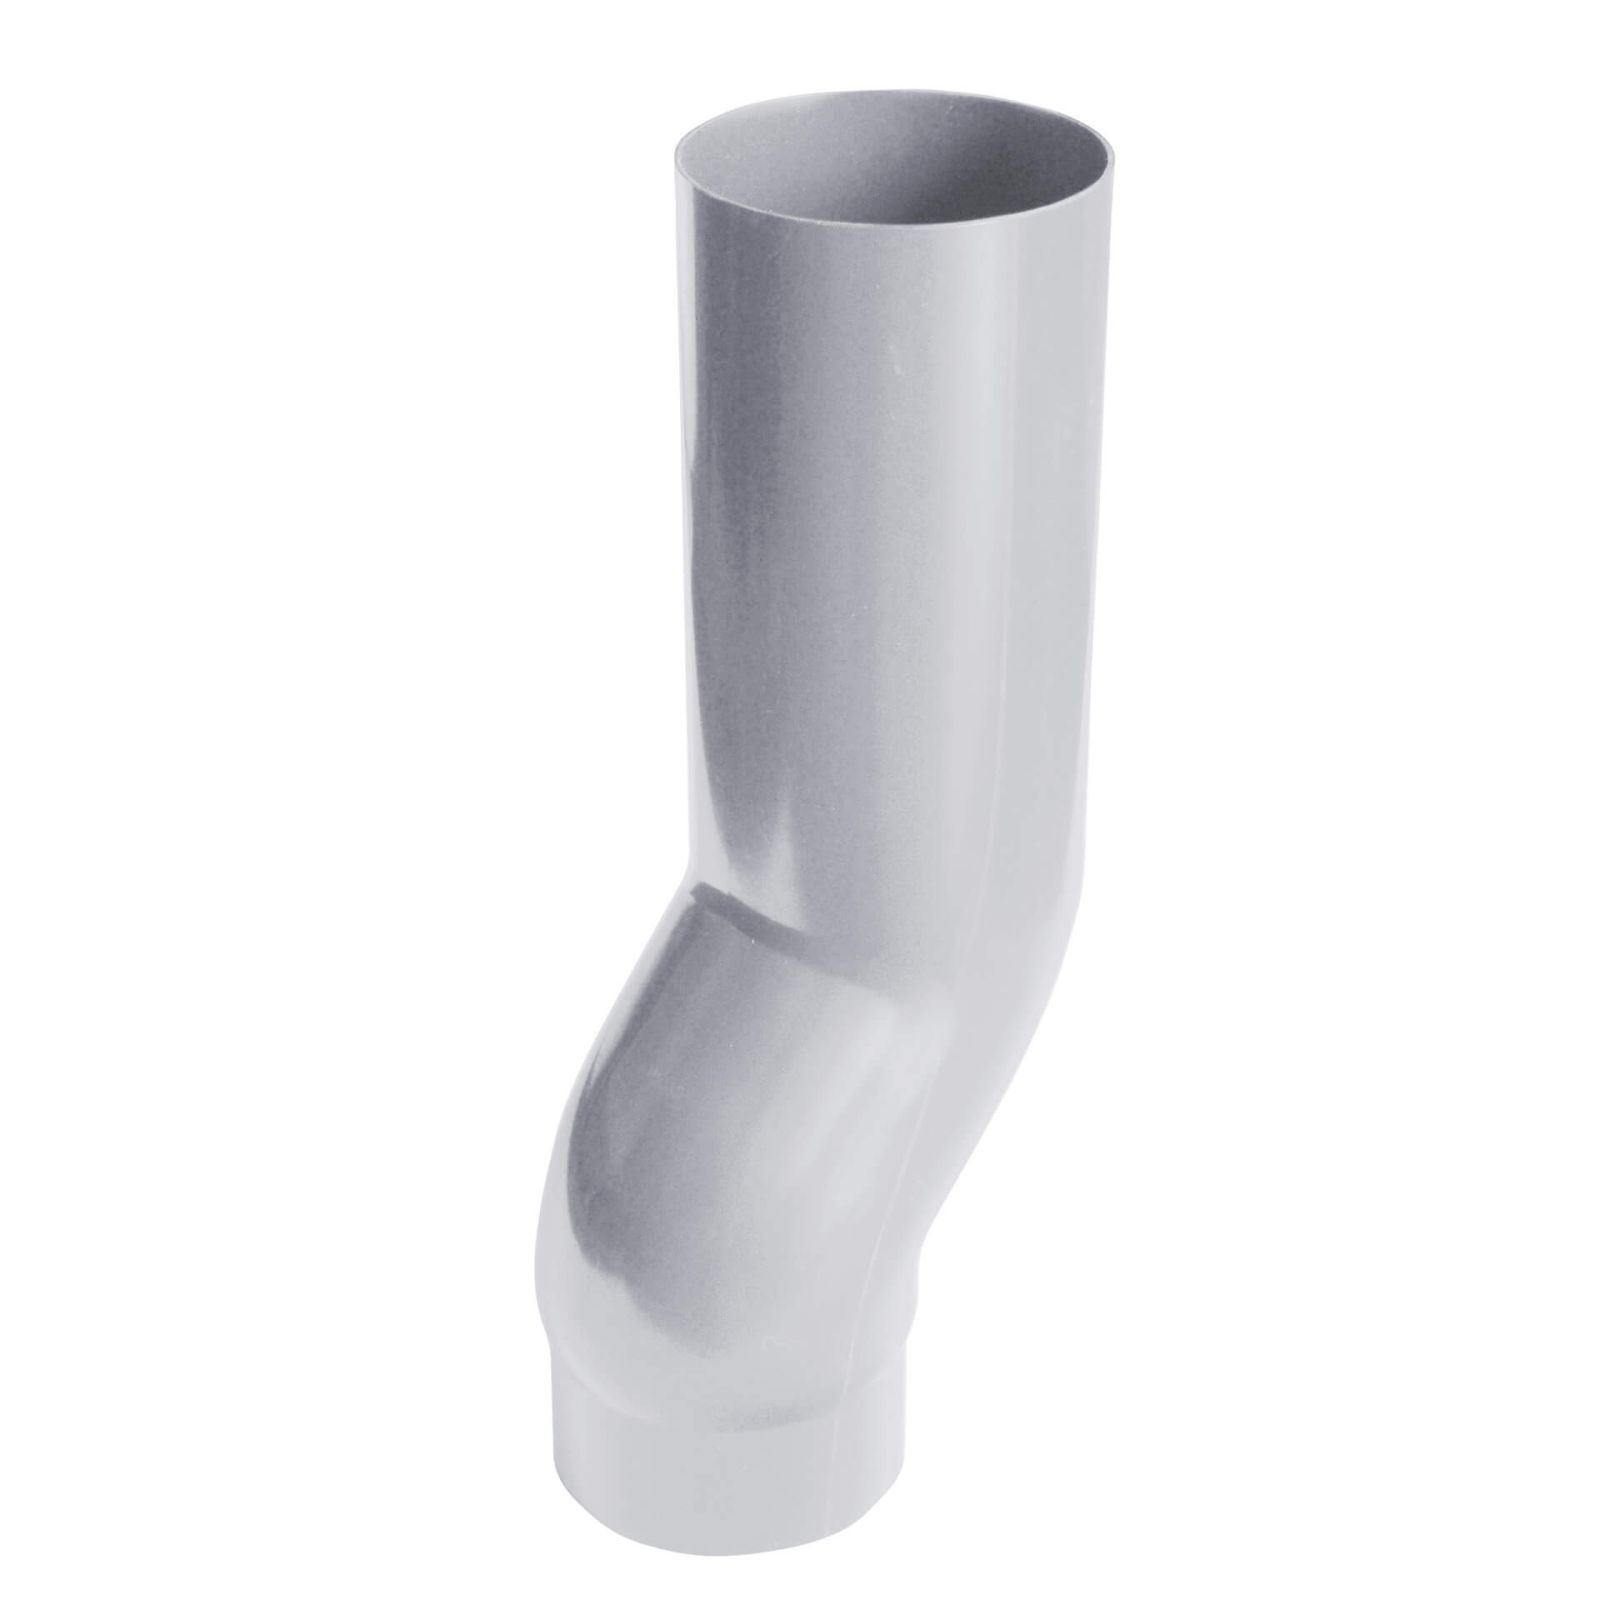 Sockelknie | PVC | Ø 90 mm | Farbe Grau